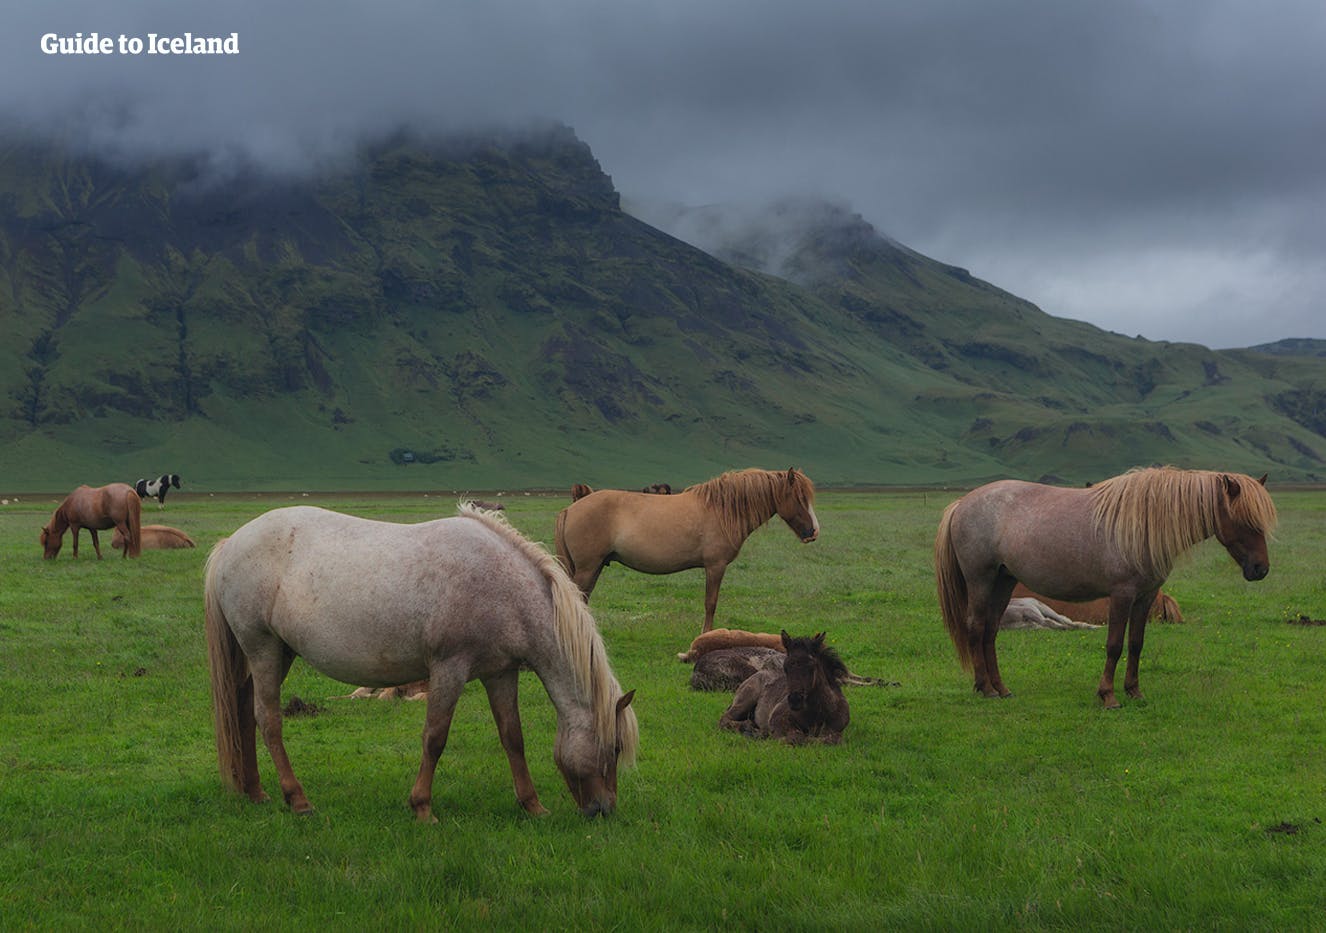 I cavalli islandesi sono famosi per essere intelligenti, socievoli, curiosi e dolci.